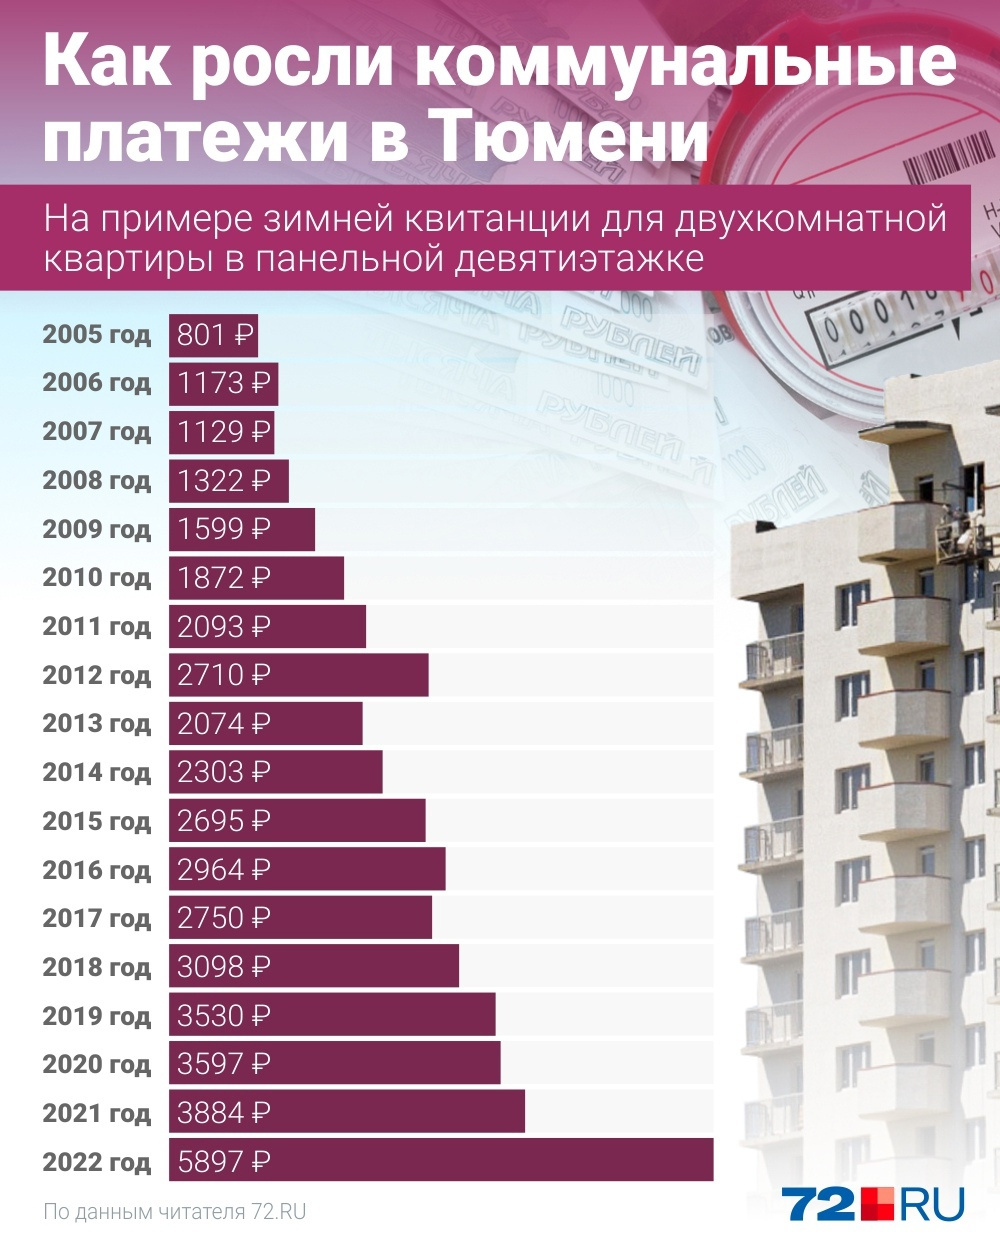 Это суммы, которые Анатолий Иванович отдавал за услуги ЖКХ каждый декабрь года. Как вы считаете: оправдан ли такой рост?